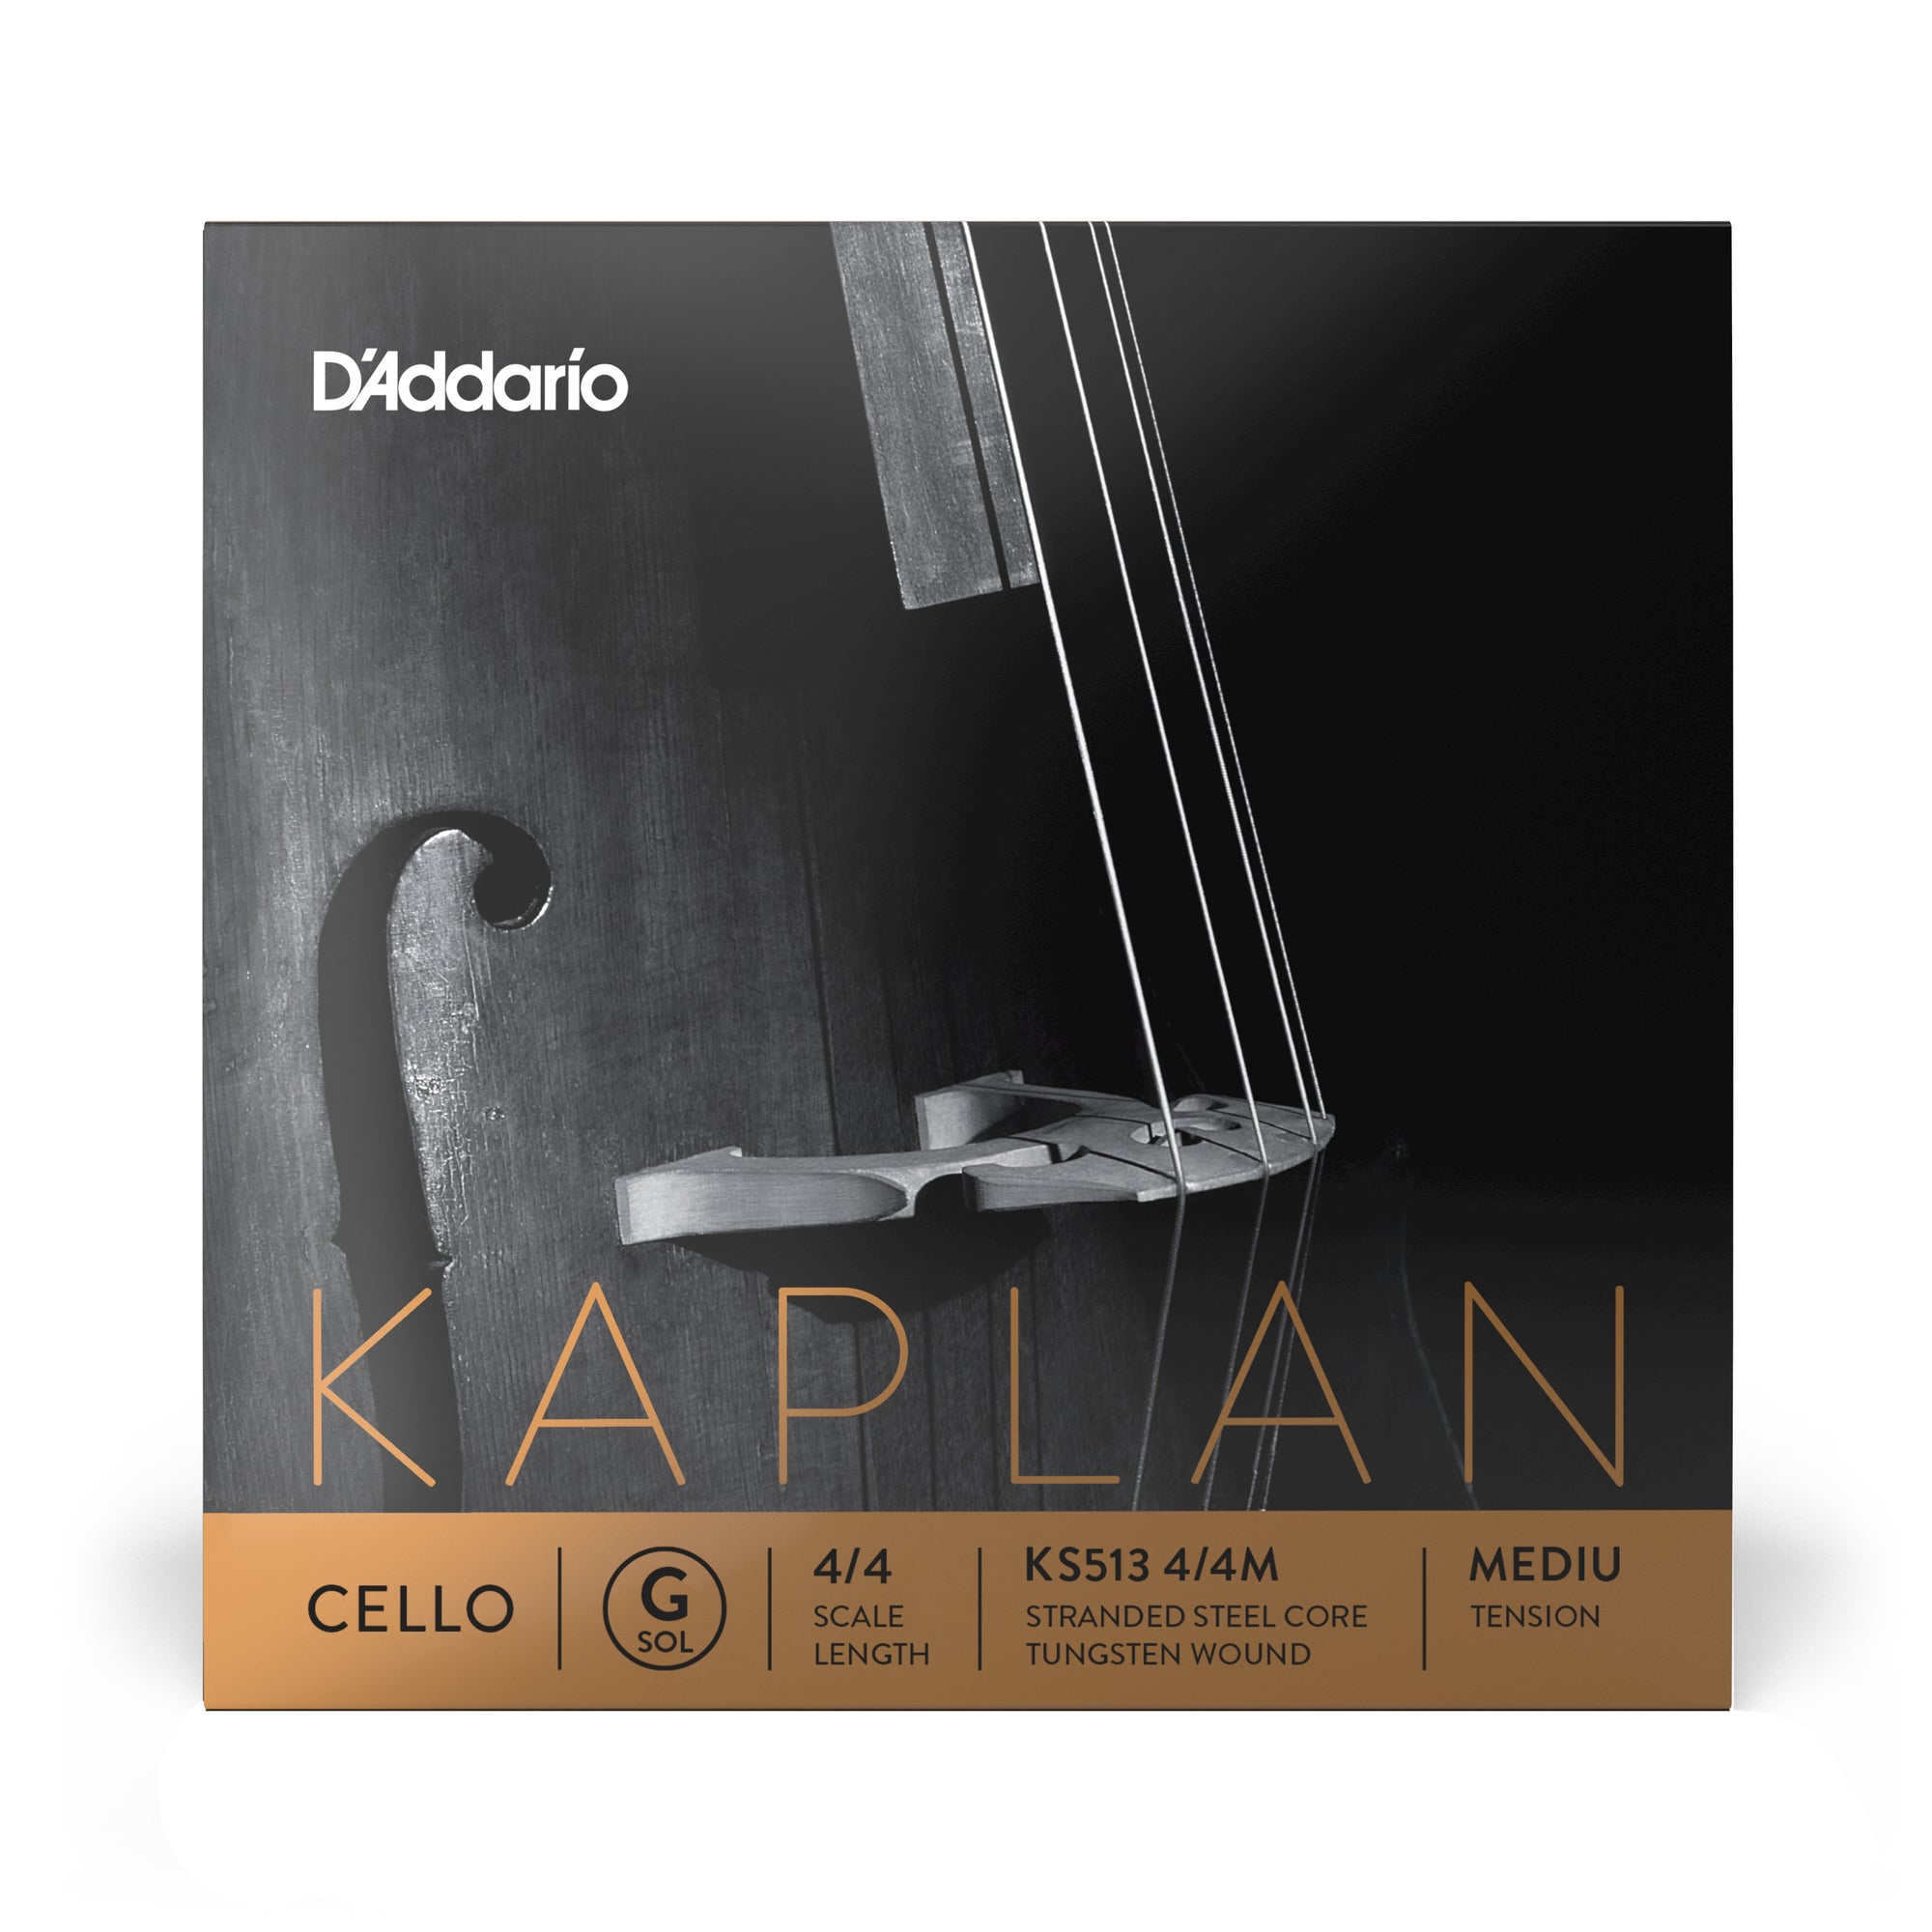 D'Addario Kaplan Cello G String 4/4